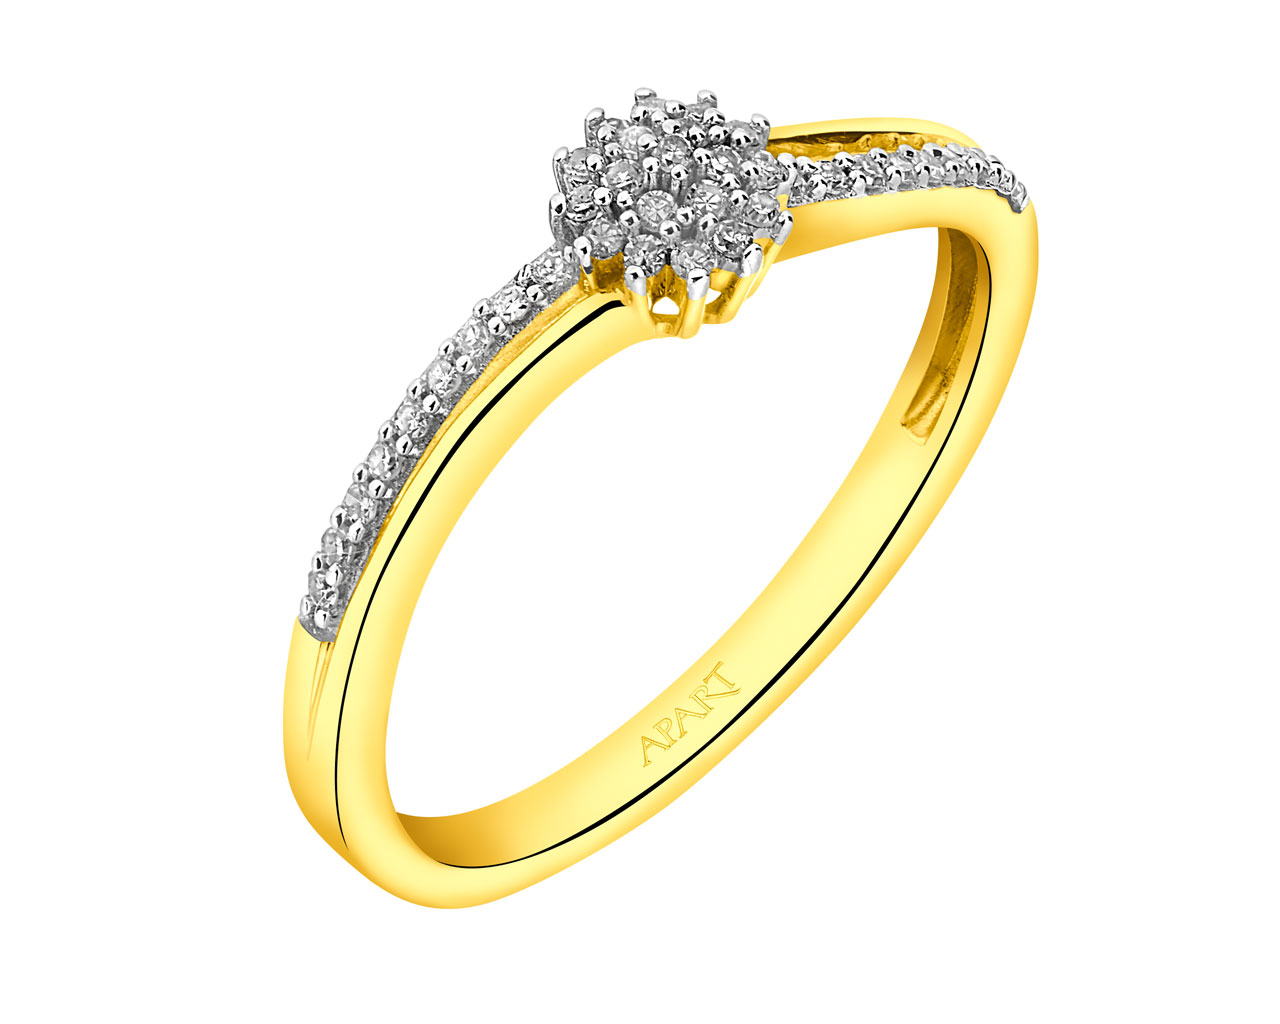 Prsten ze žlutého zlata s diamanty  0,12 ct - ryzost 585